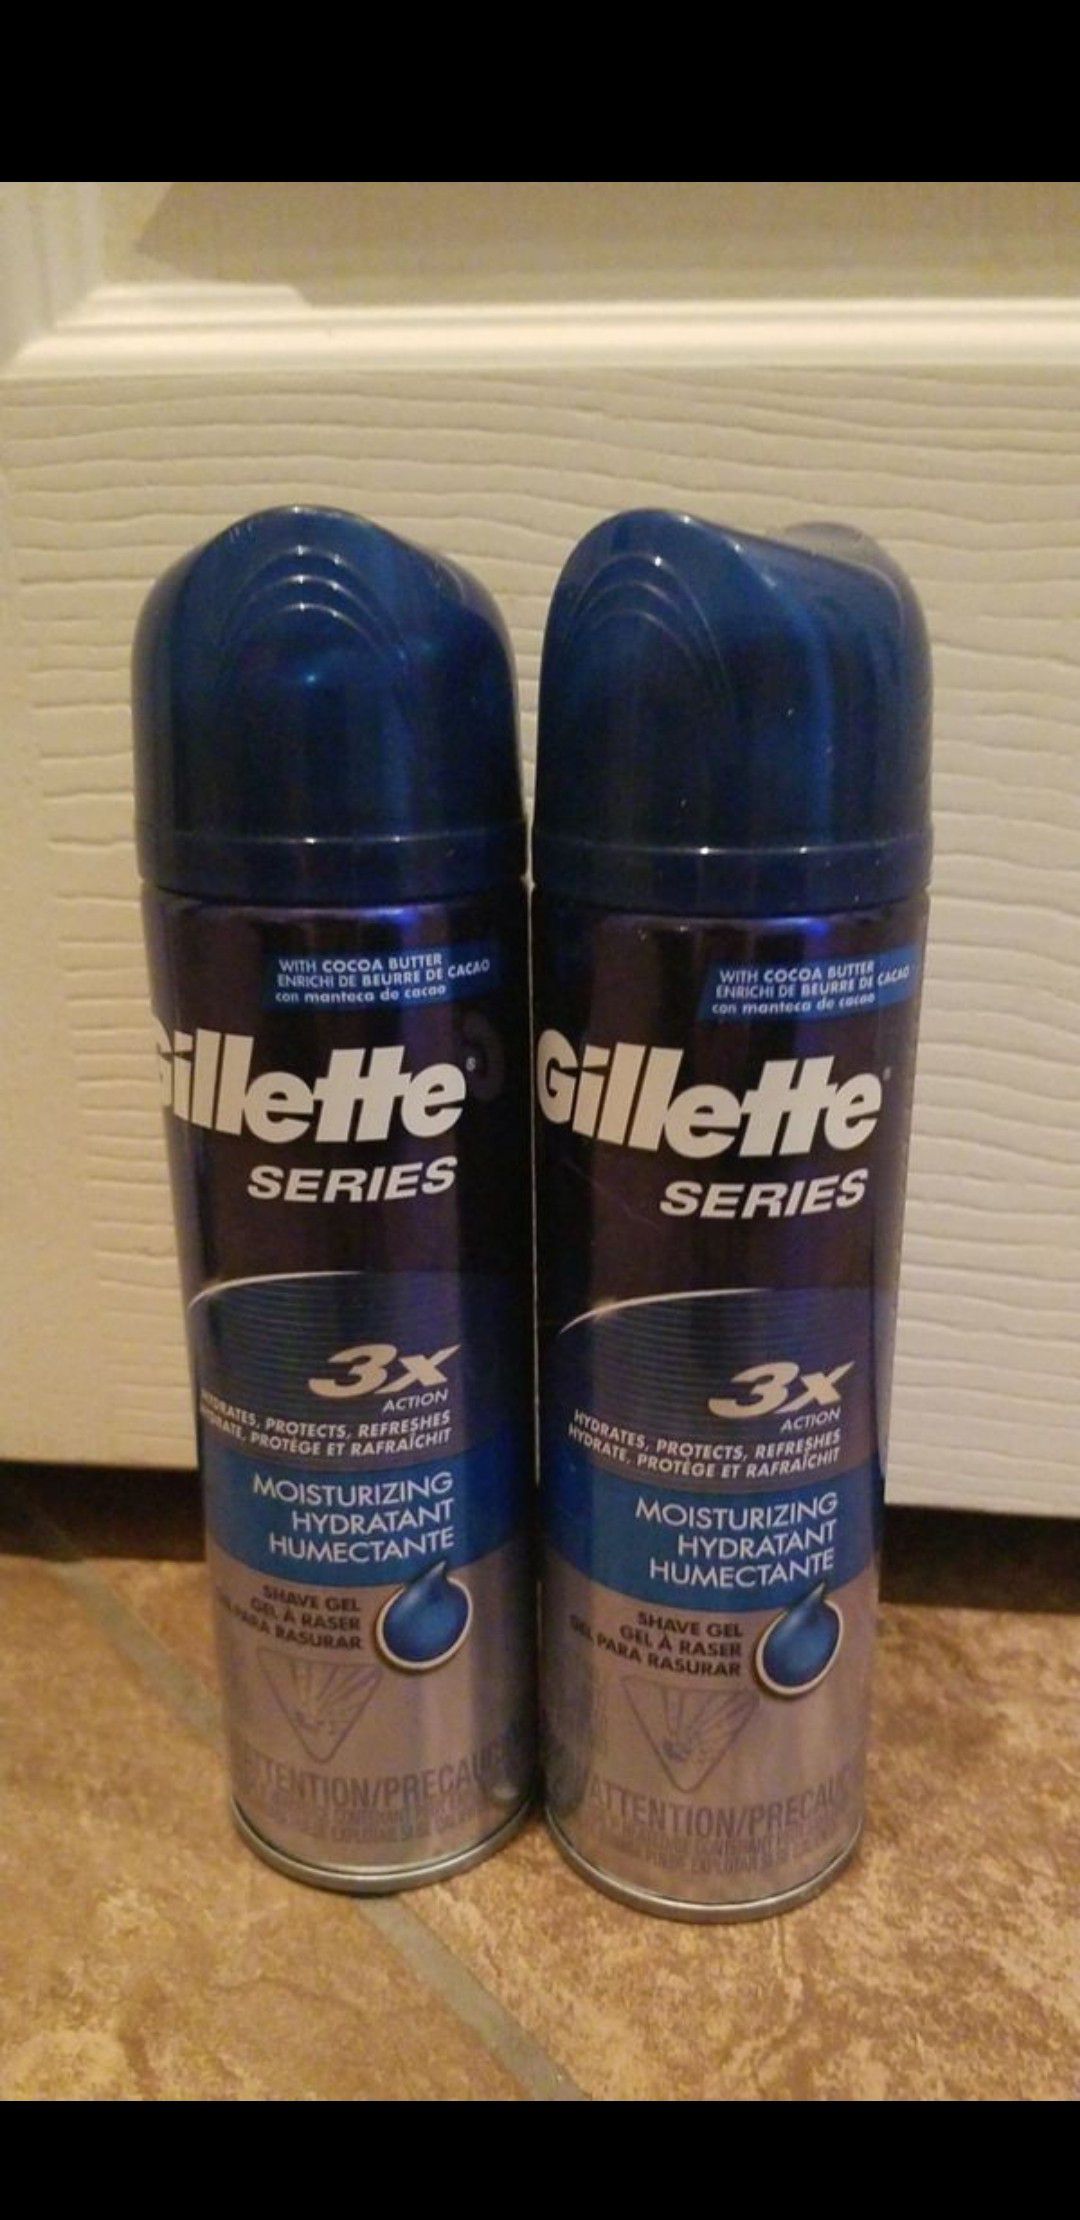 Gillette Series shave gel